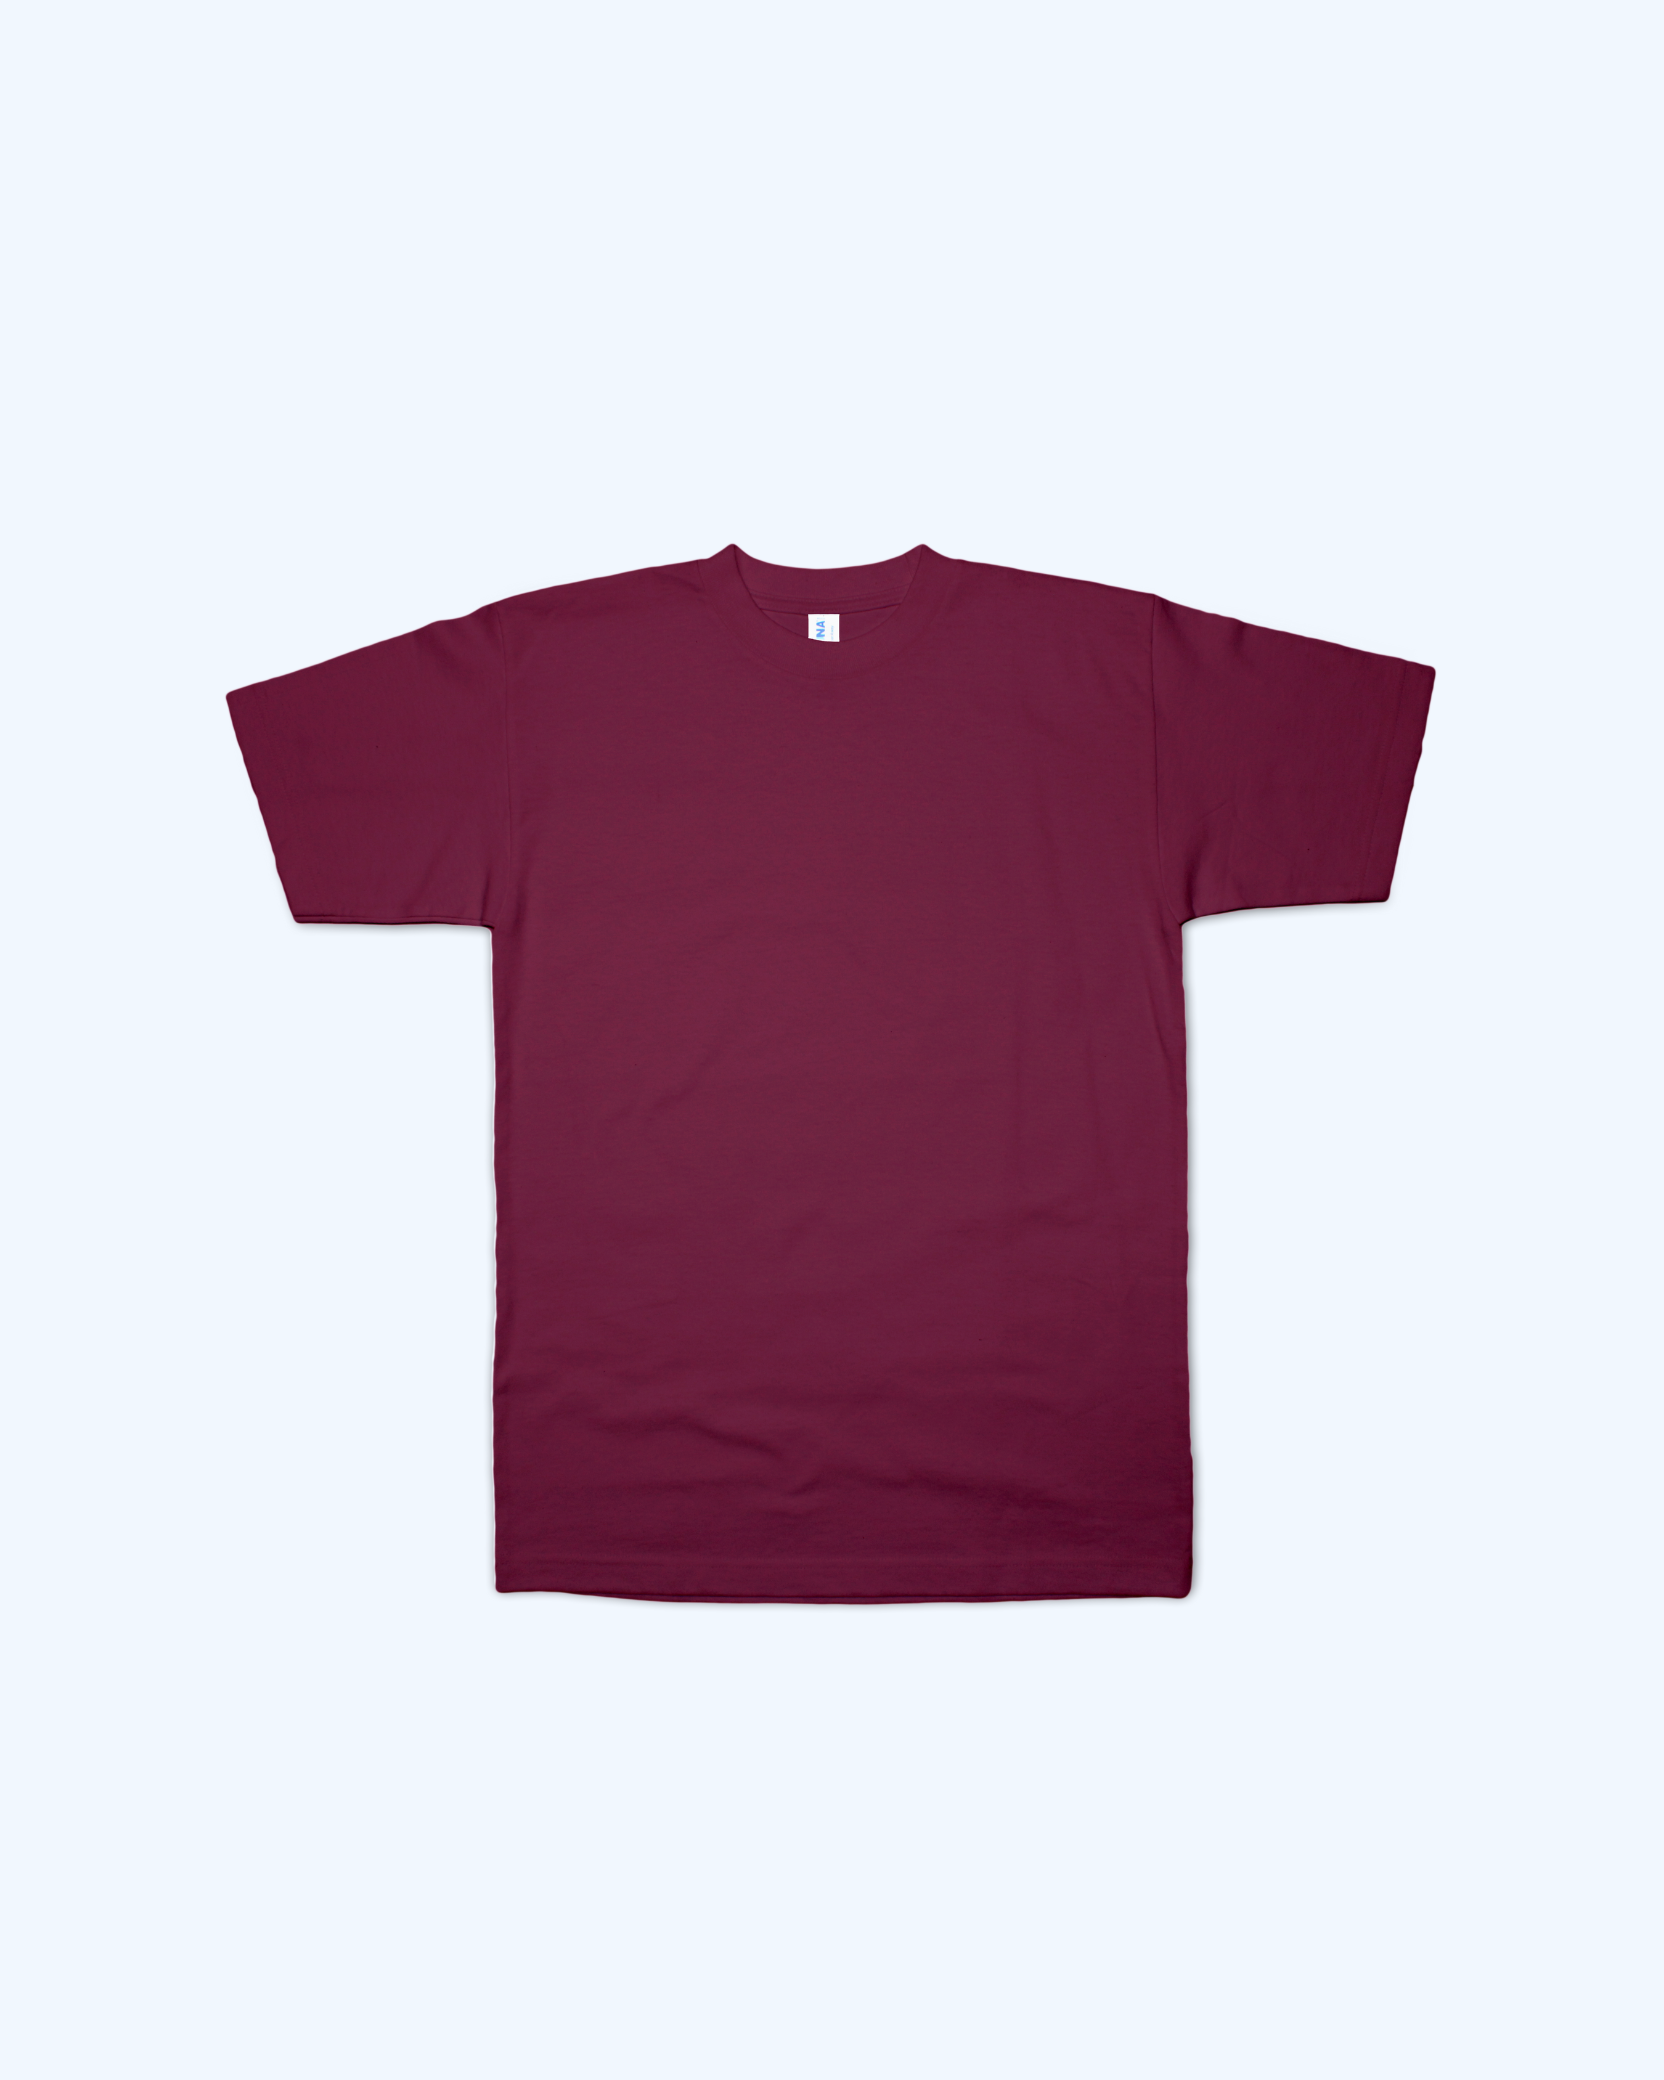 Adult Burgundy short sleeve t-shirt